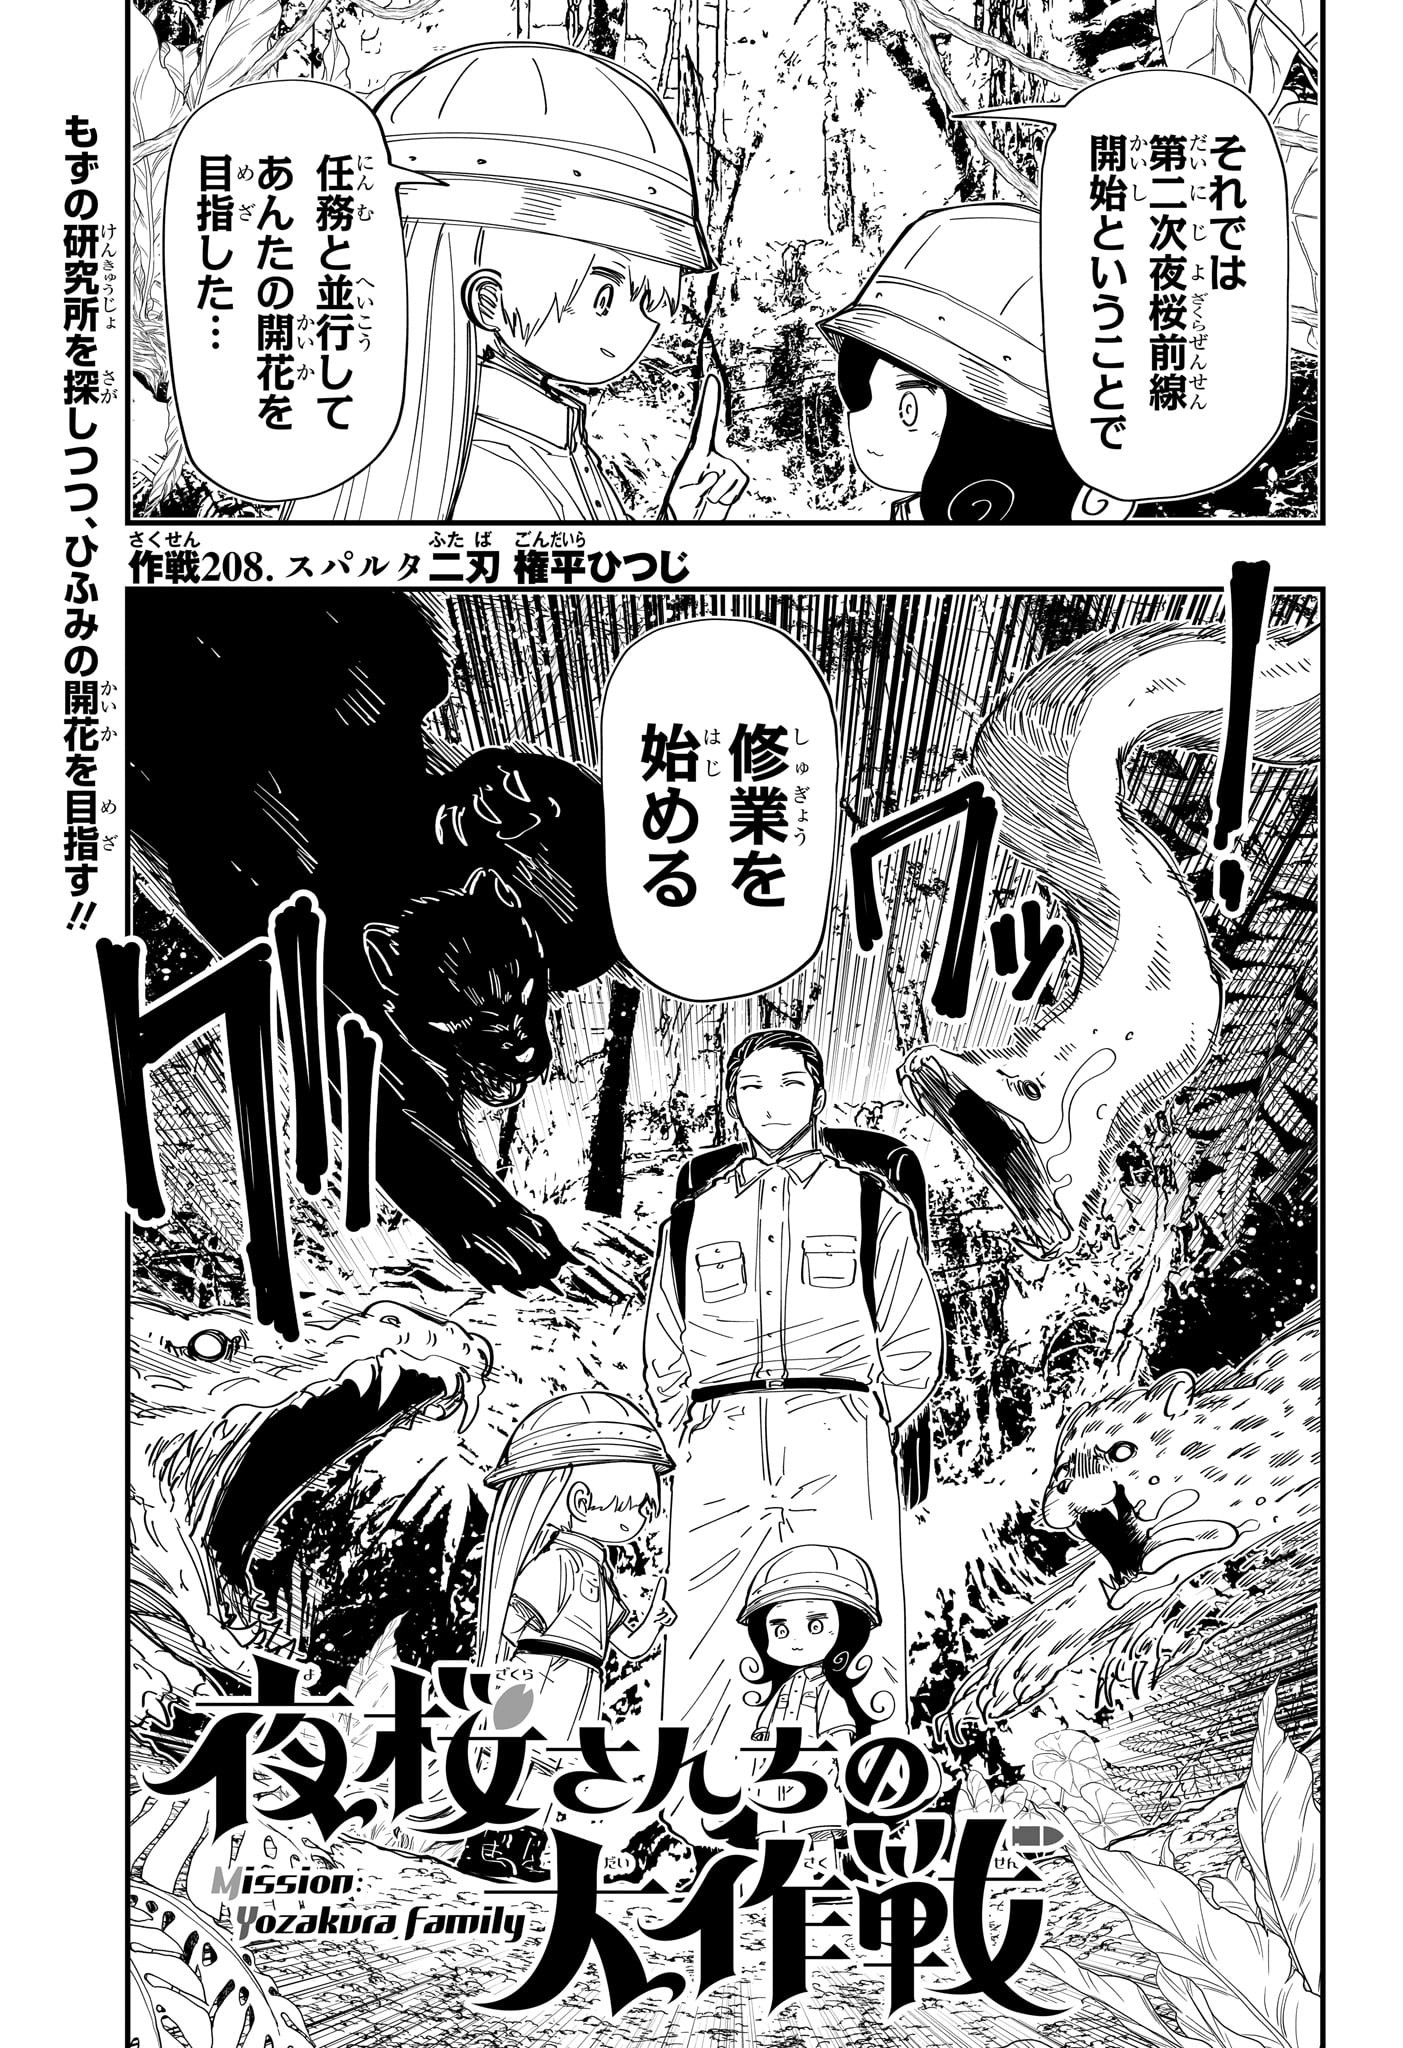 Yozakura-san Chi no Daisakusen - Chapter 208 - Page 1